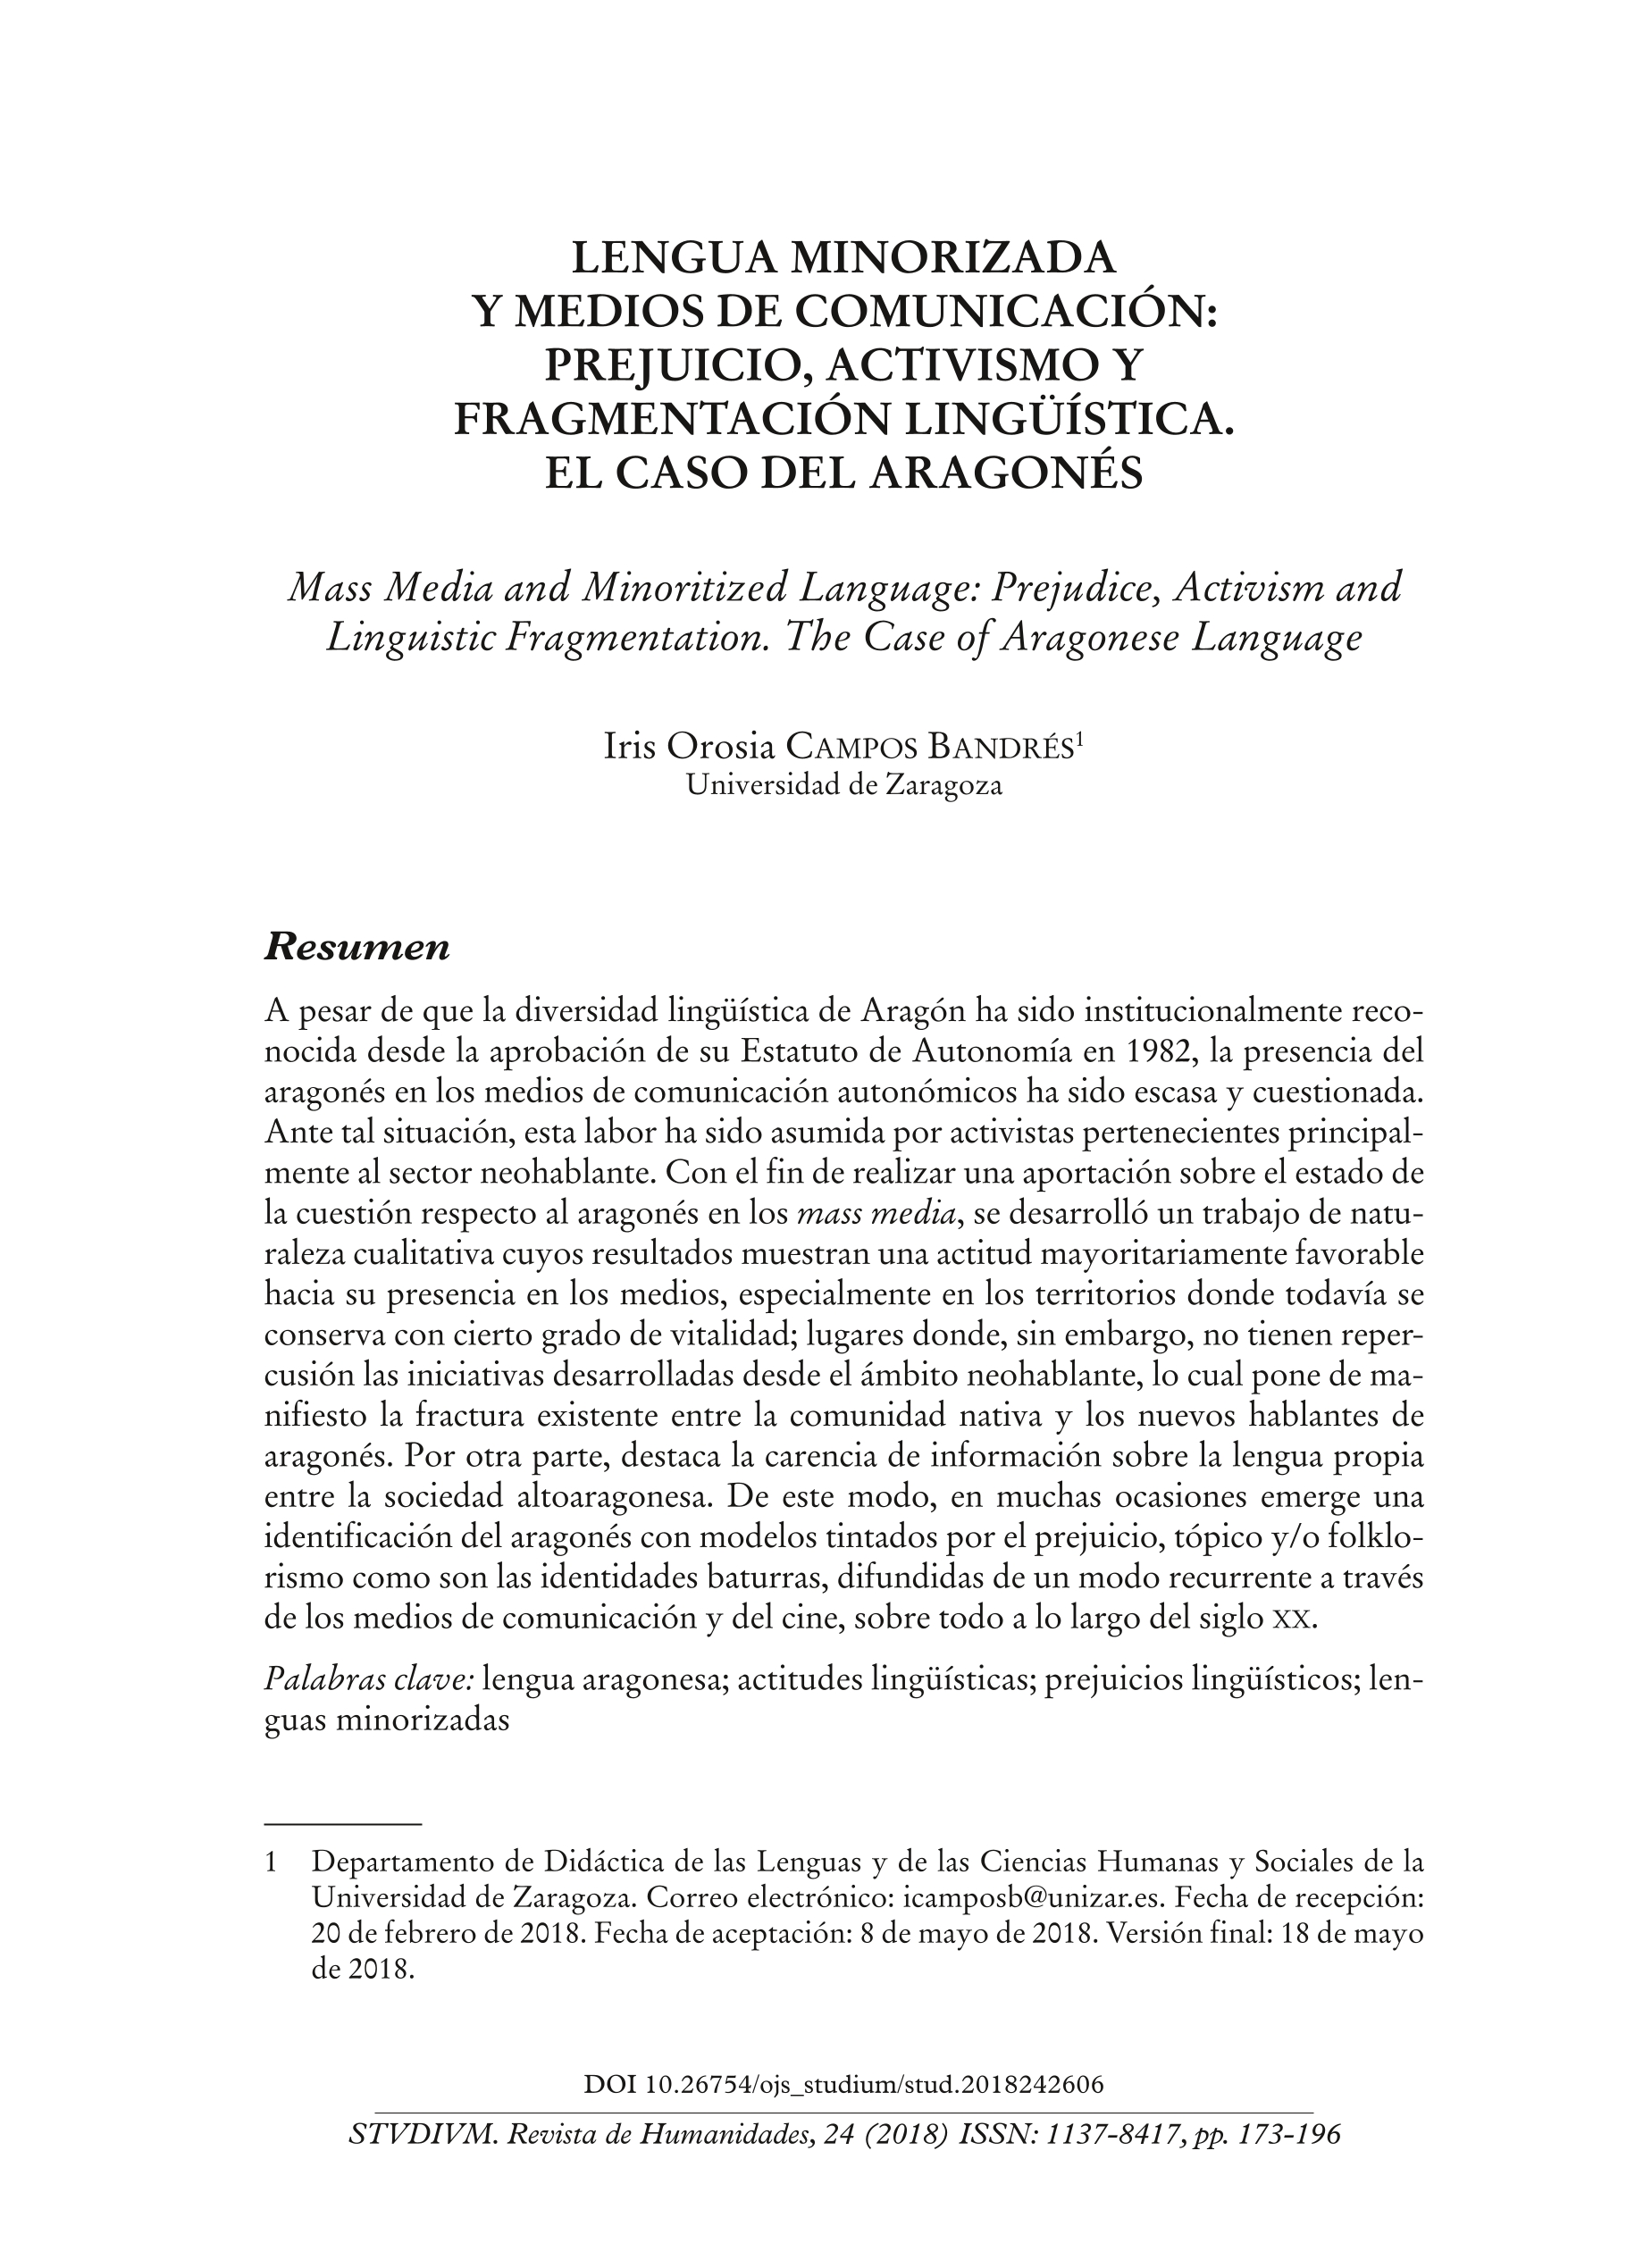 Lengua minorizada y medios de comunicación: prejuicio, activismo y fragmentación lingüística. El caso del aragonés.